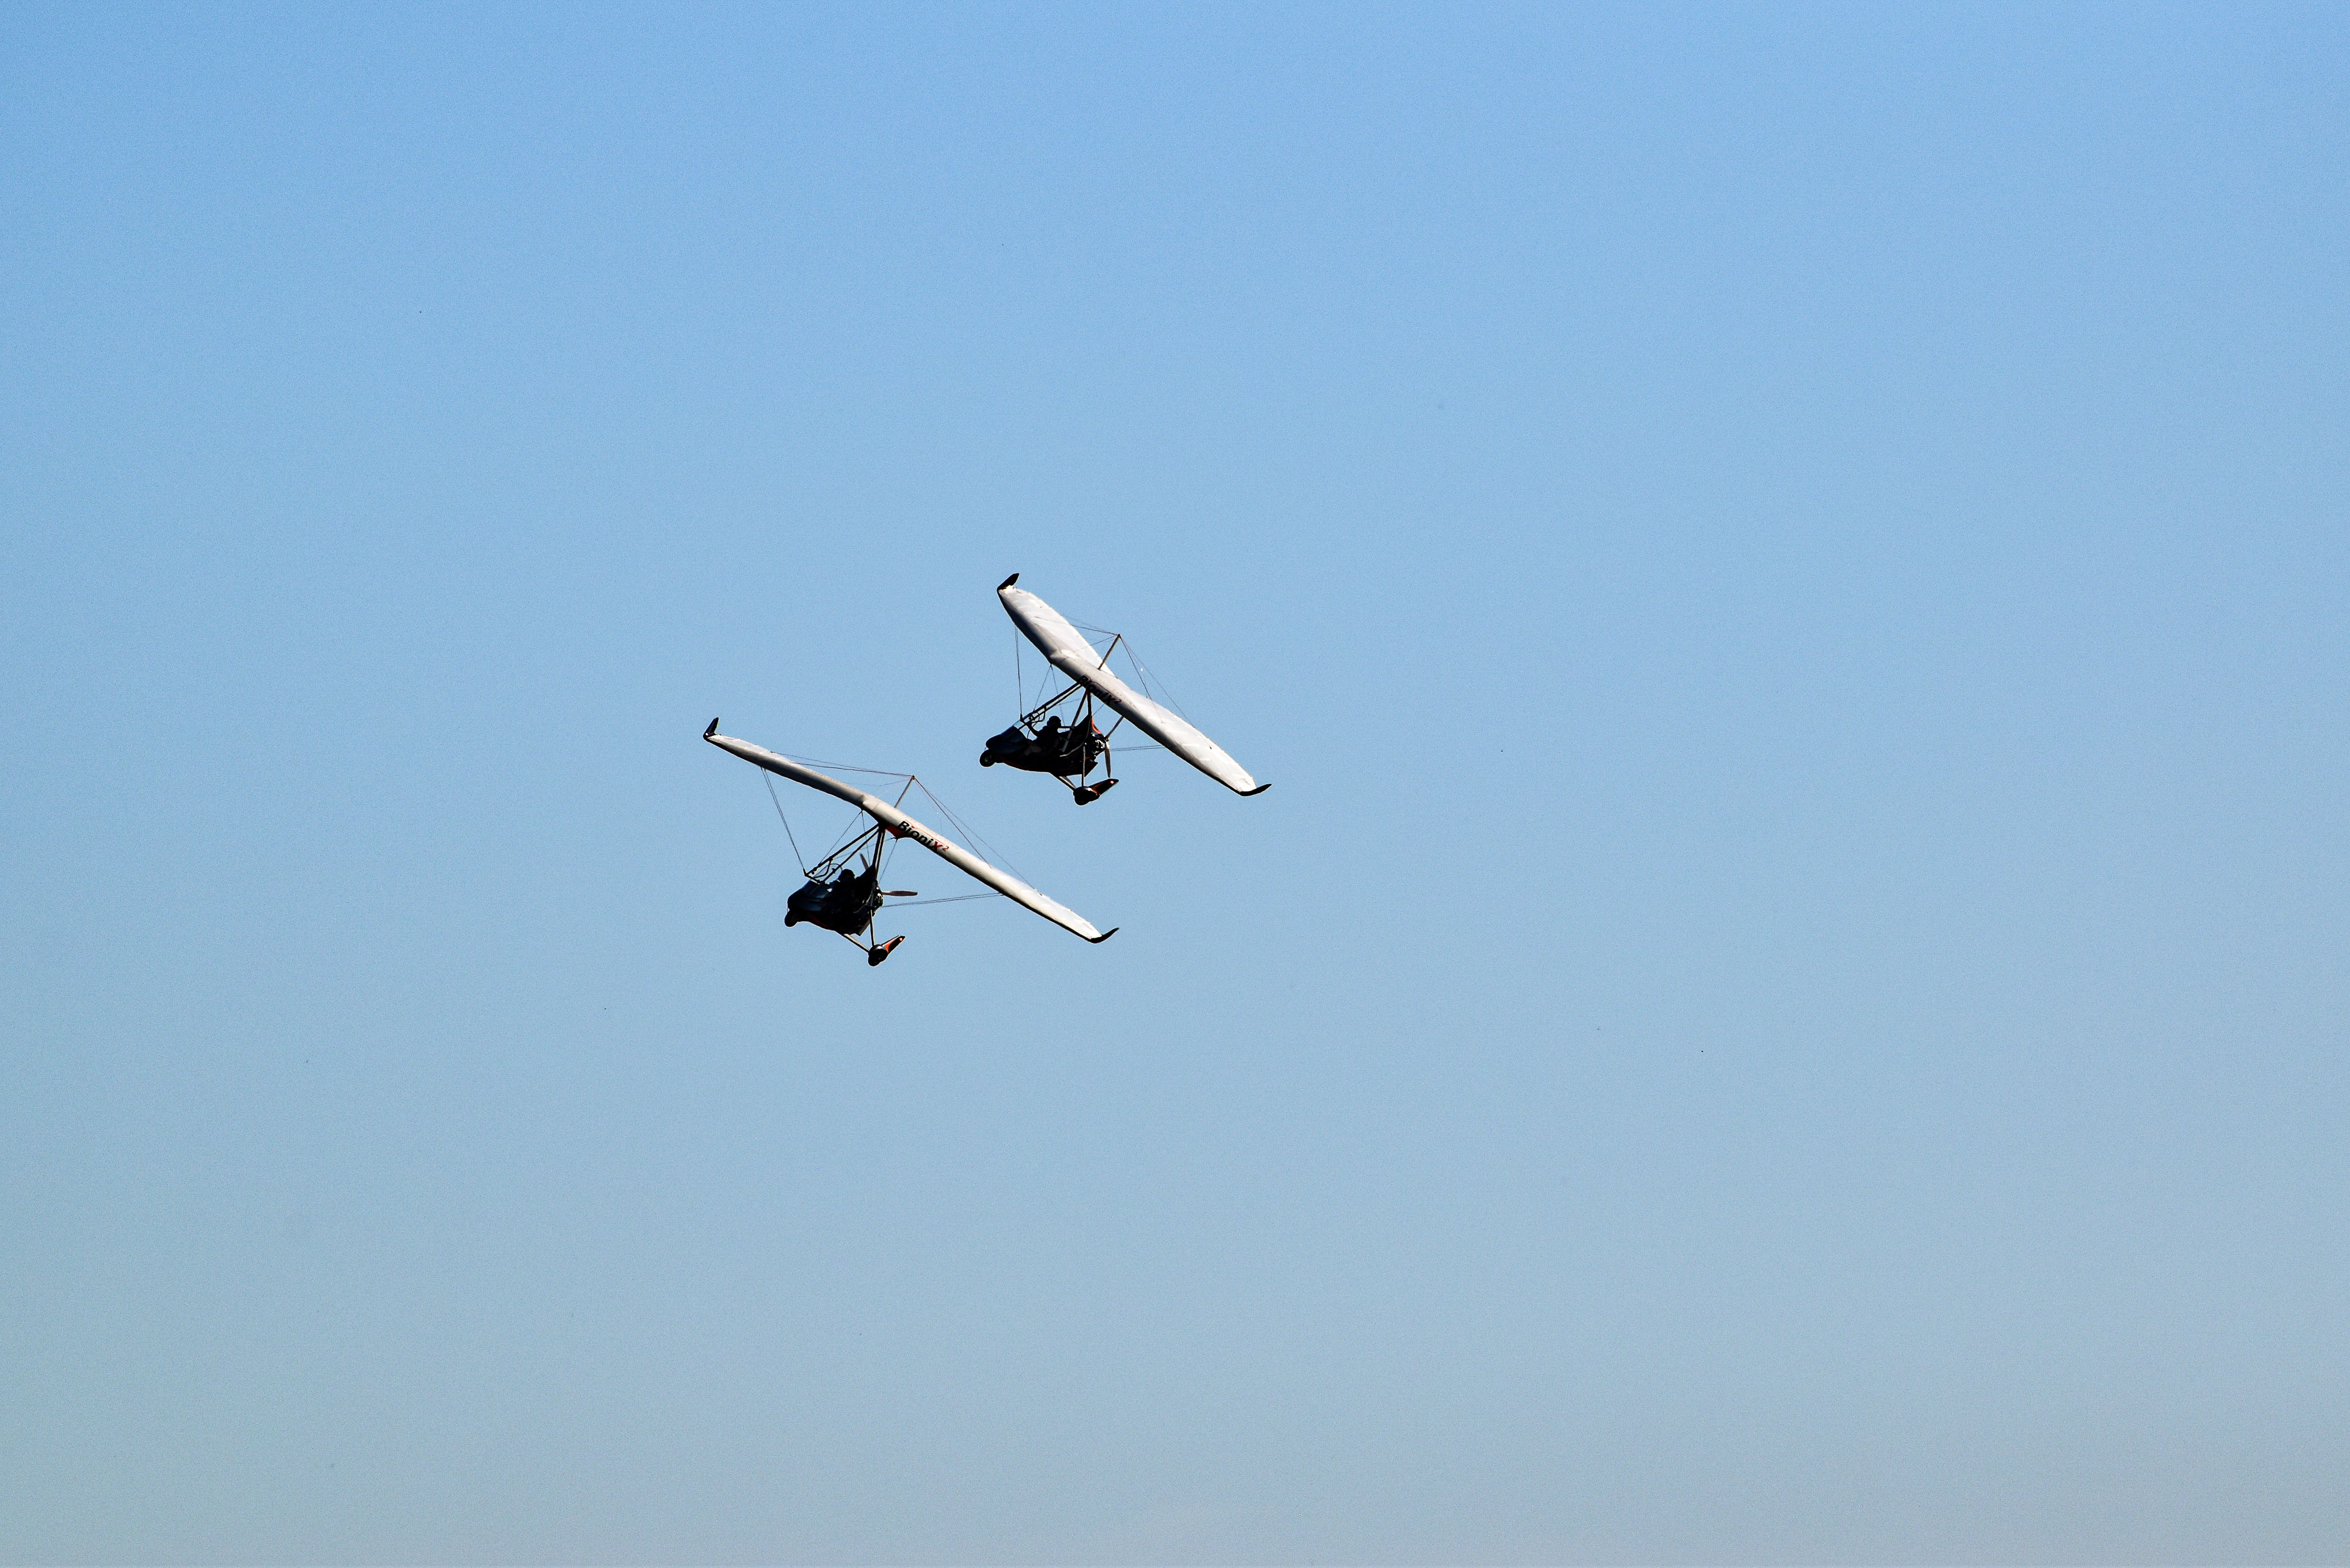 fly/en-vol-bionix2-tanarg-neo-en-vol-in-fly-ulm-pendulaire-ultralight-trike-wings-33.jpg